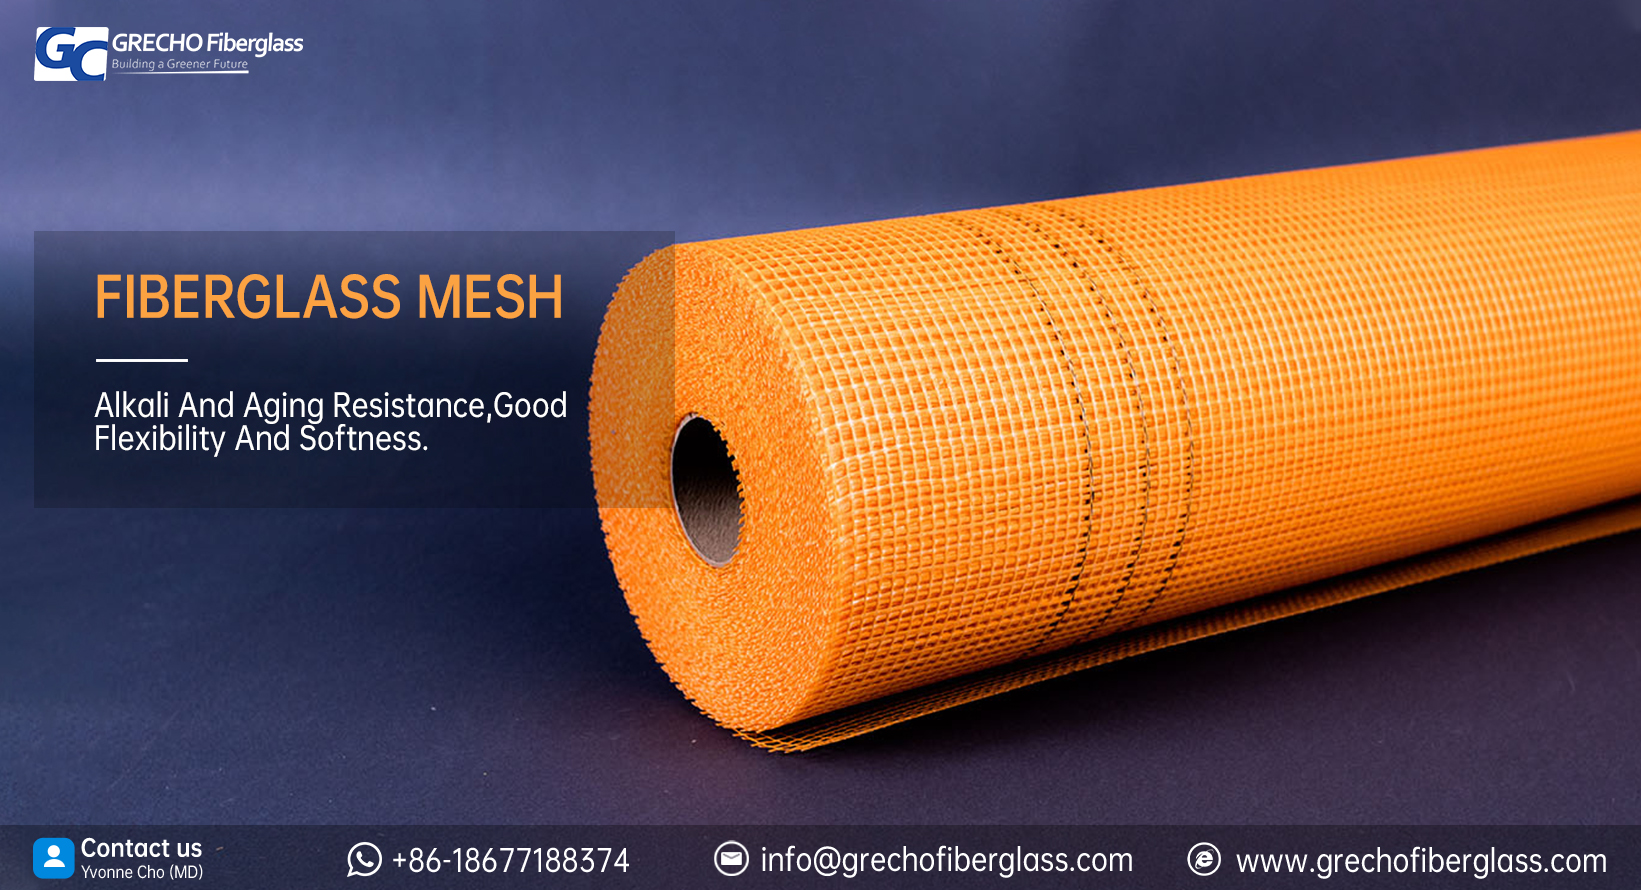 /fiberglass-mesh-2-produkt/